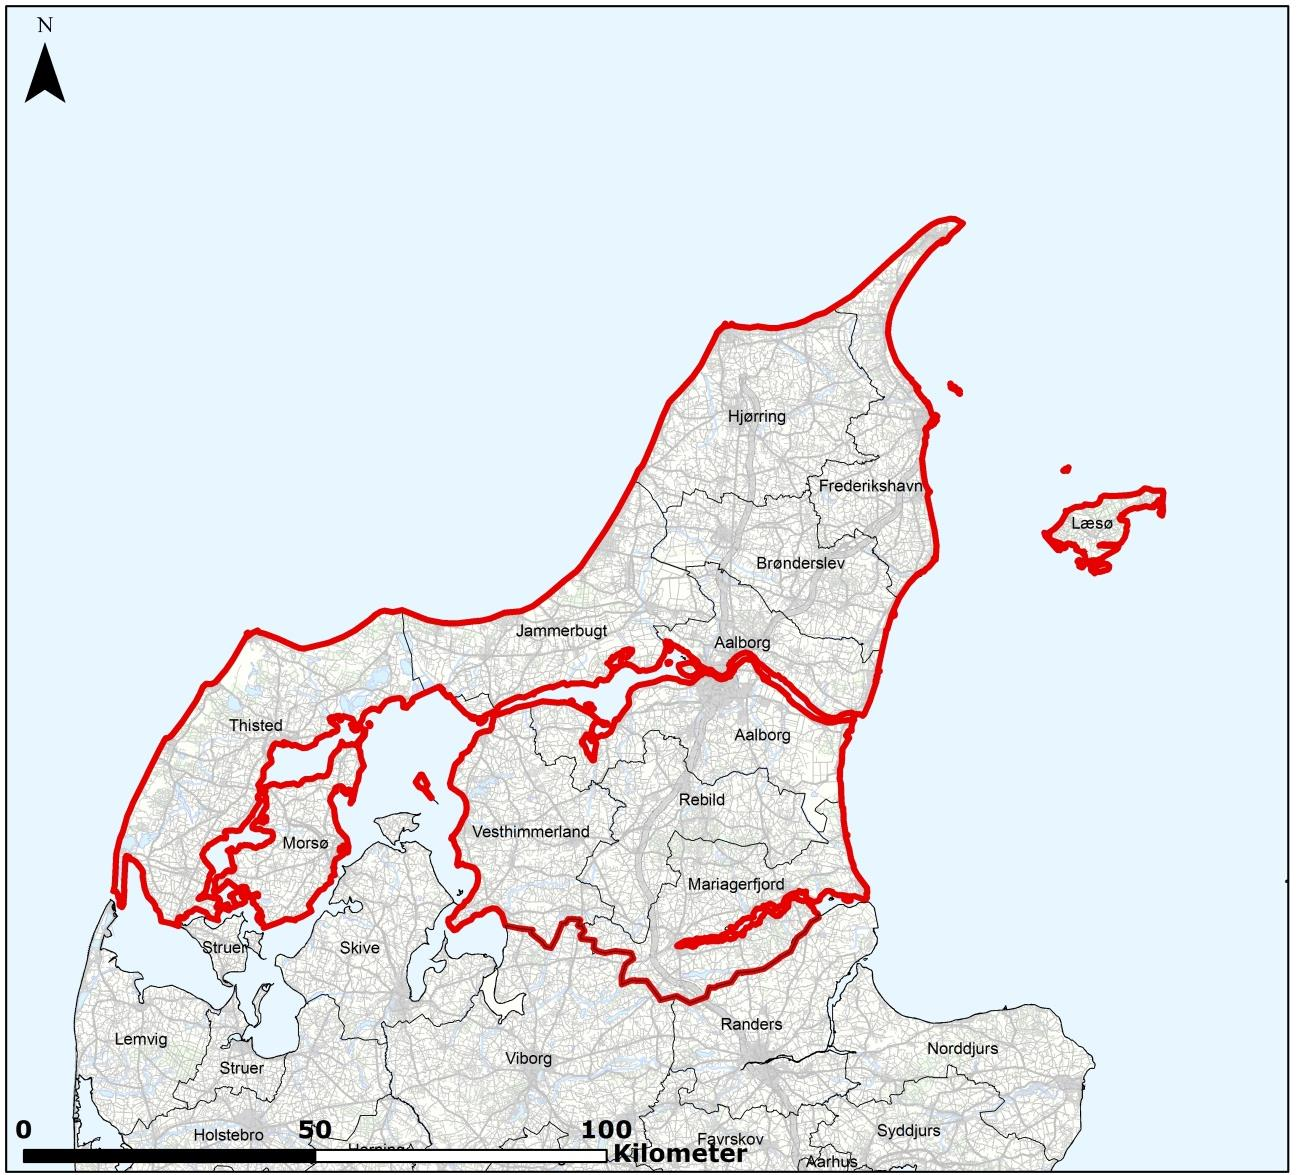 Figur 1-1 Oversigtkort over Region Nordjylland med kommunegrænser.